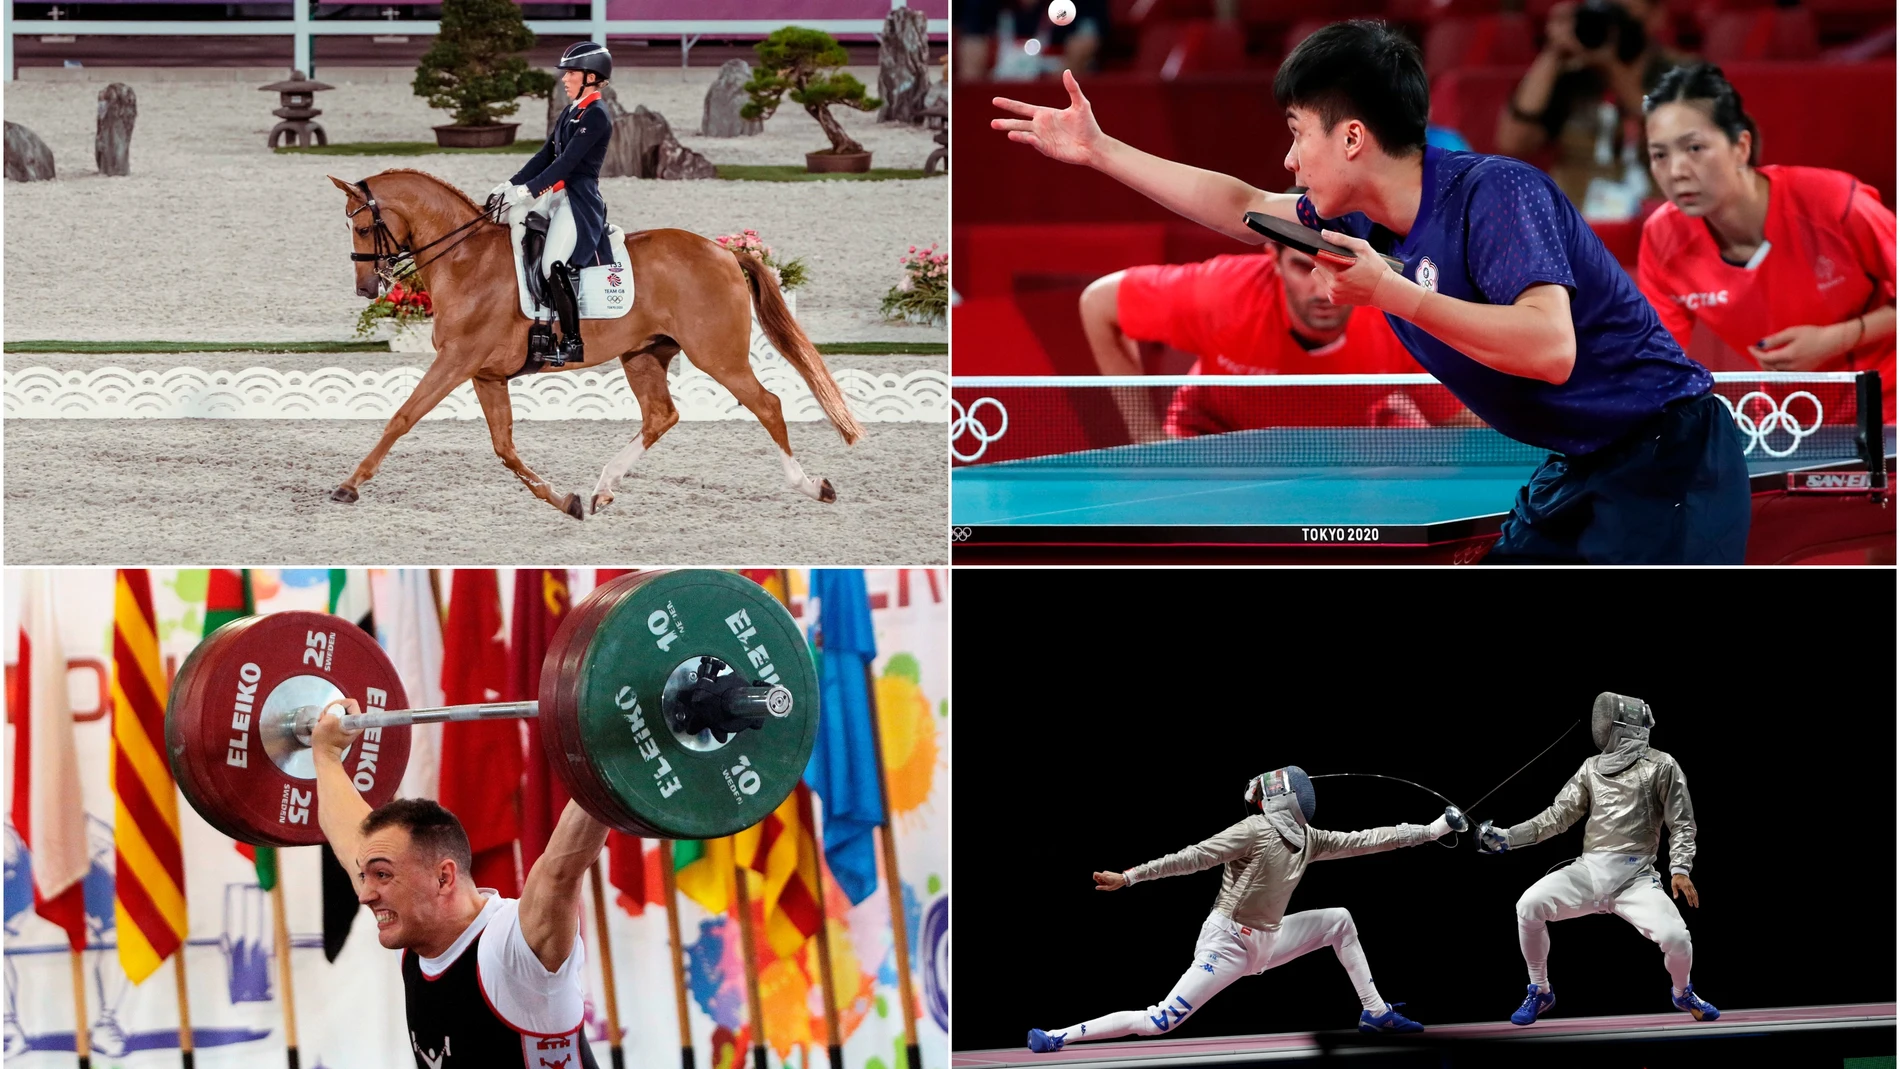 JUEGA: ¿Conoces todos los deportes que se disputan en los Juegos Olímpicos de Tokio 2020?